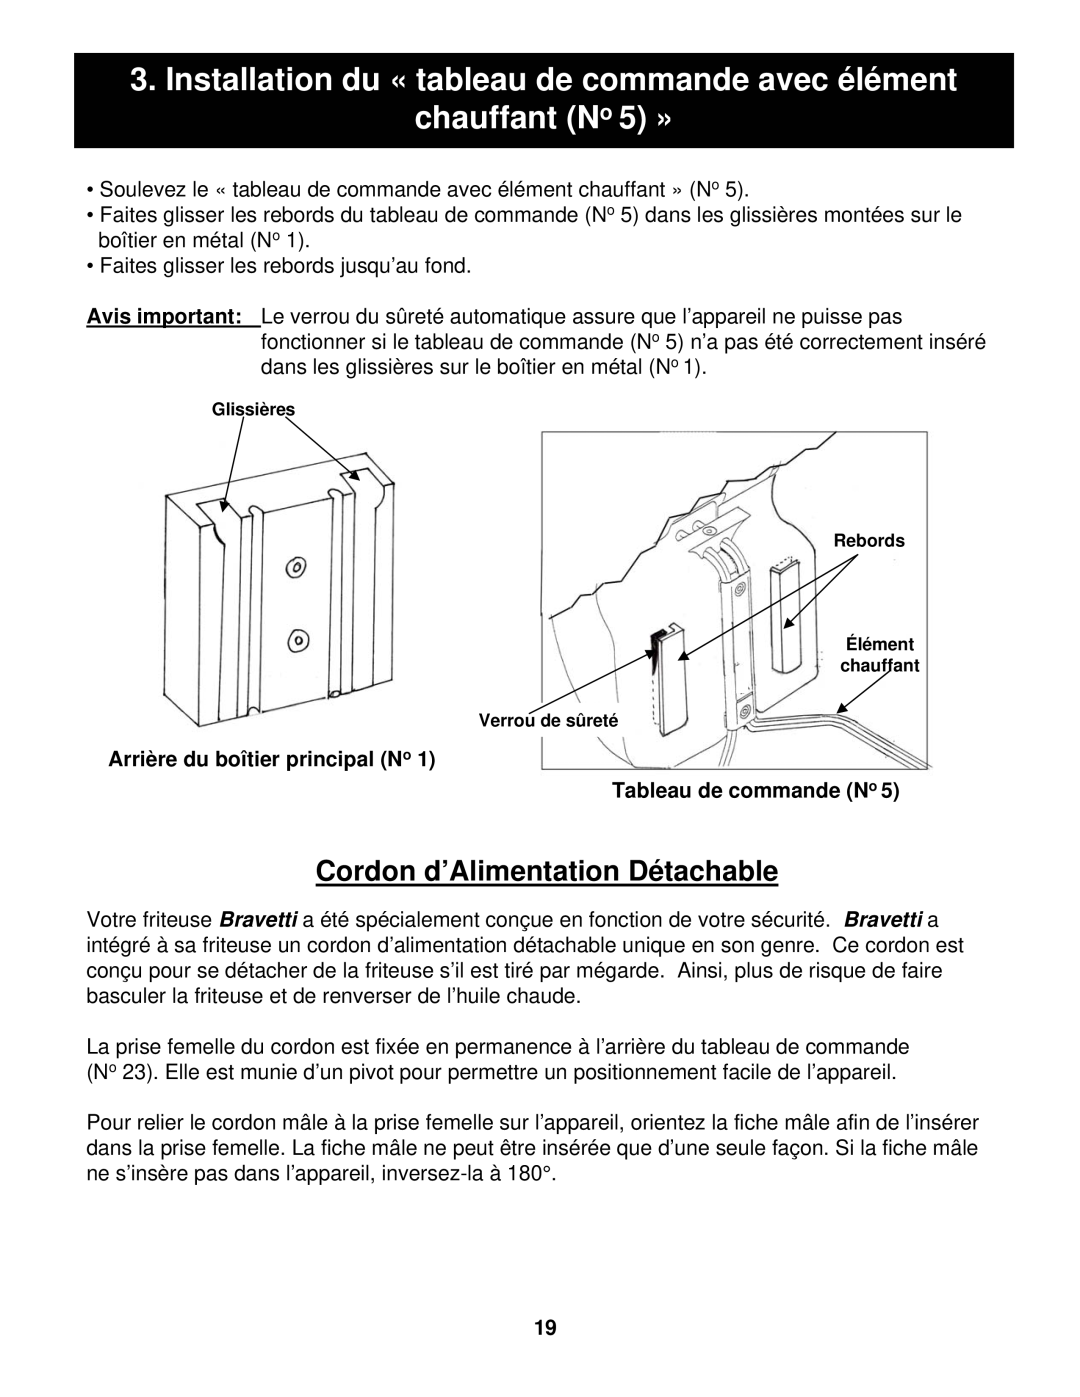 Euro-Pro BF160 manual Cordon d’Alimentation Détachable, Arrière du boîtier principal No, Tableau de commande No 